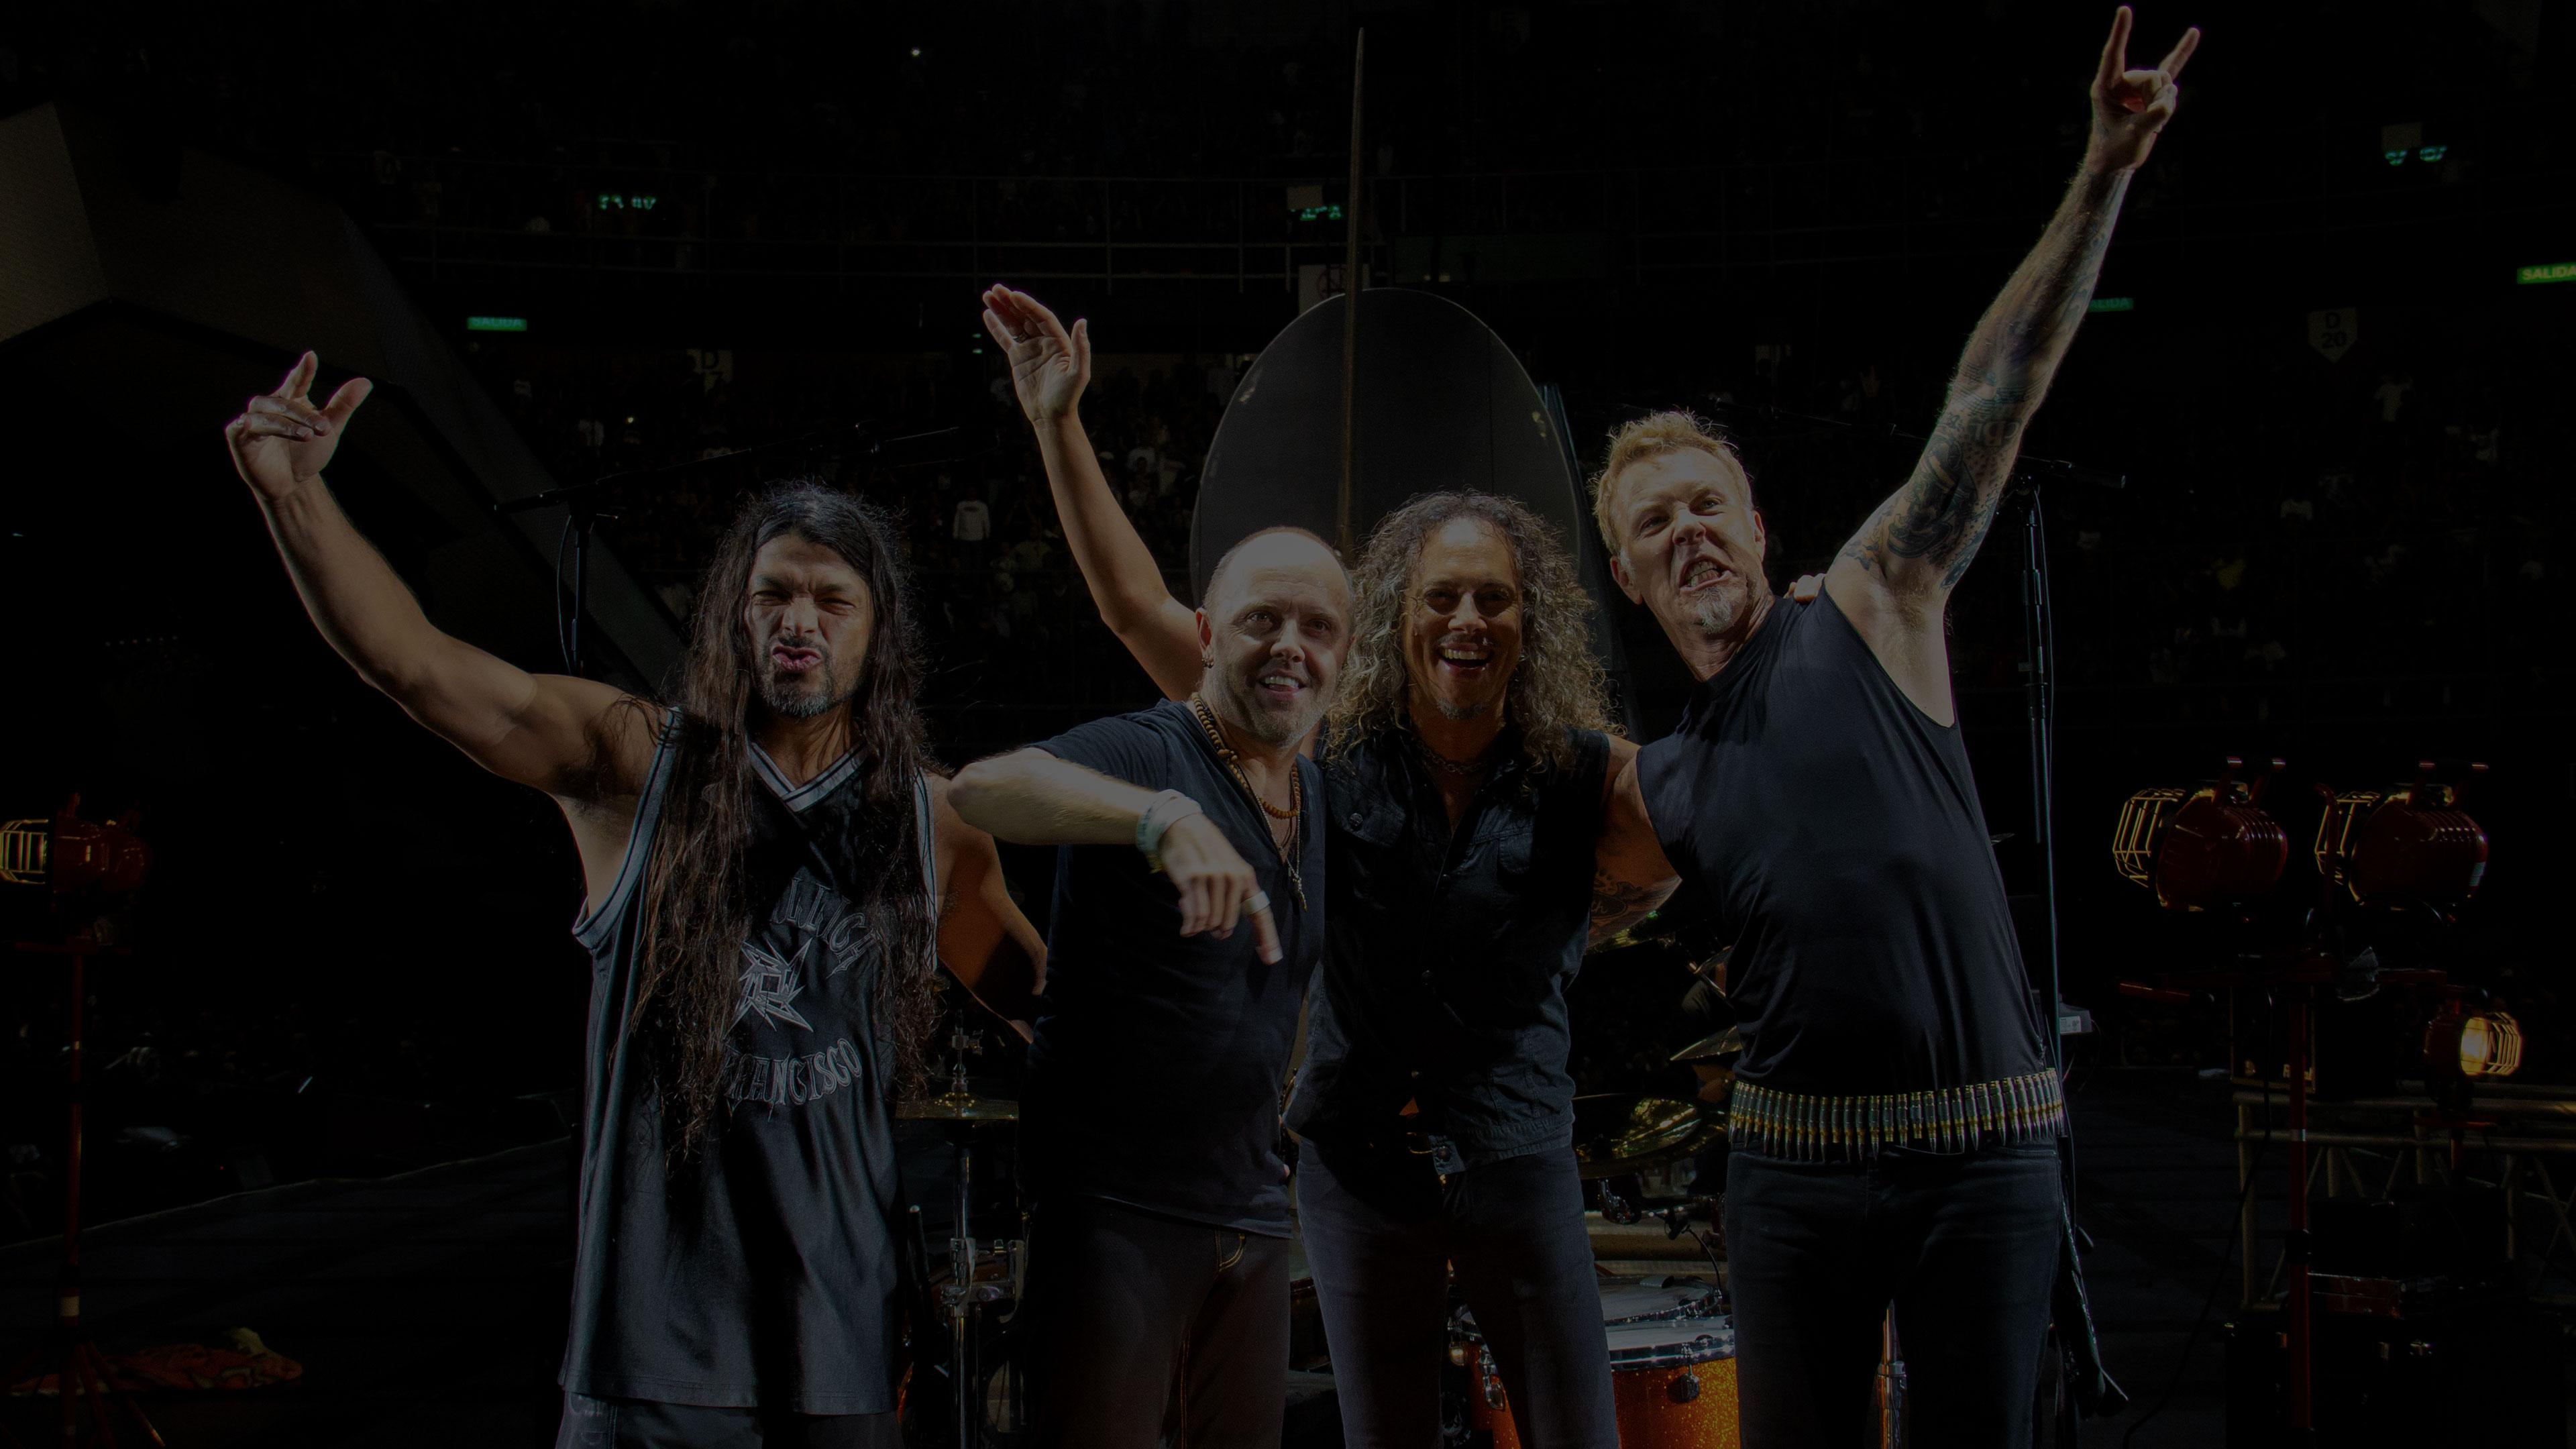 Metallica at Palacio de los Deportes in Mexico City, Mexico on August 4, 2012